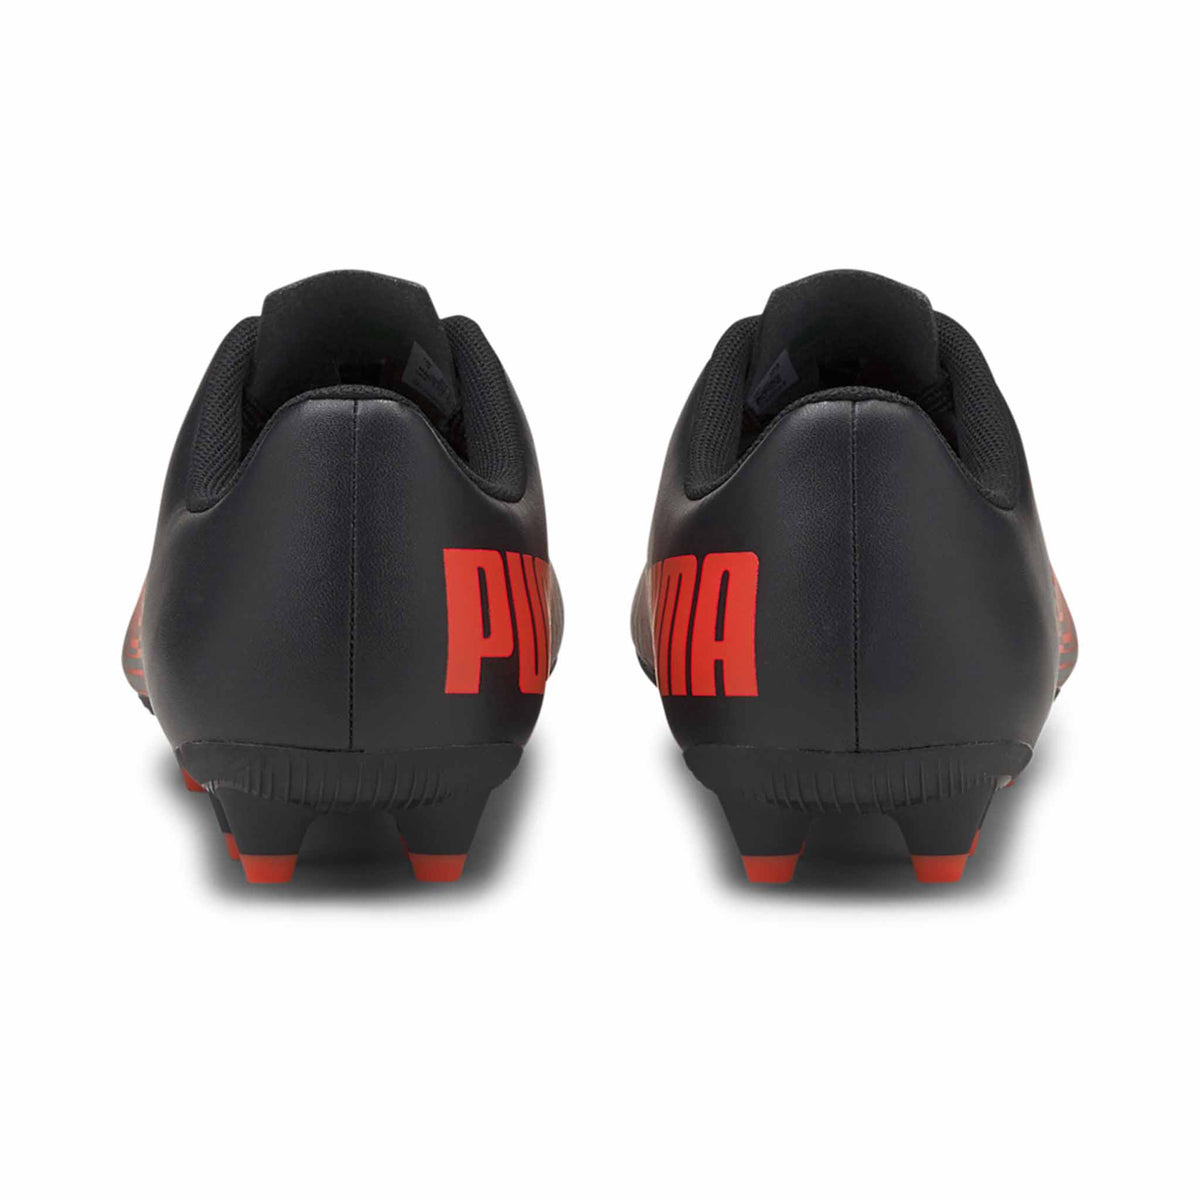 Puma Tacto FG/AG Junior chaussures de soccer enfant Noir / Rouge vue de dos